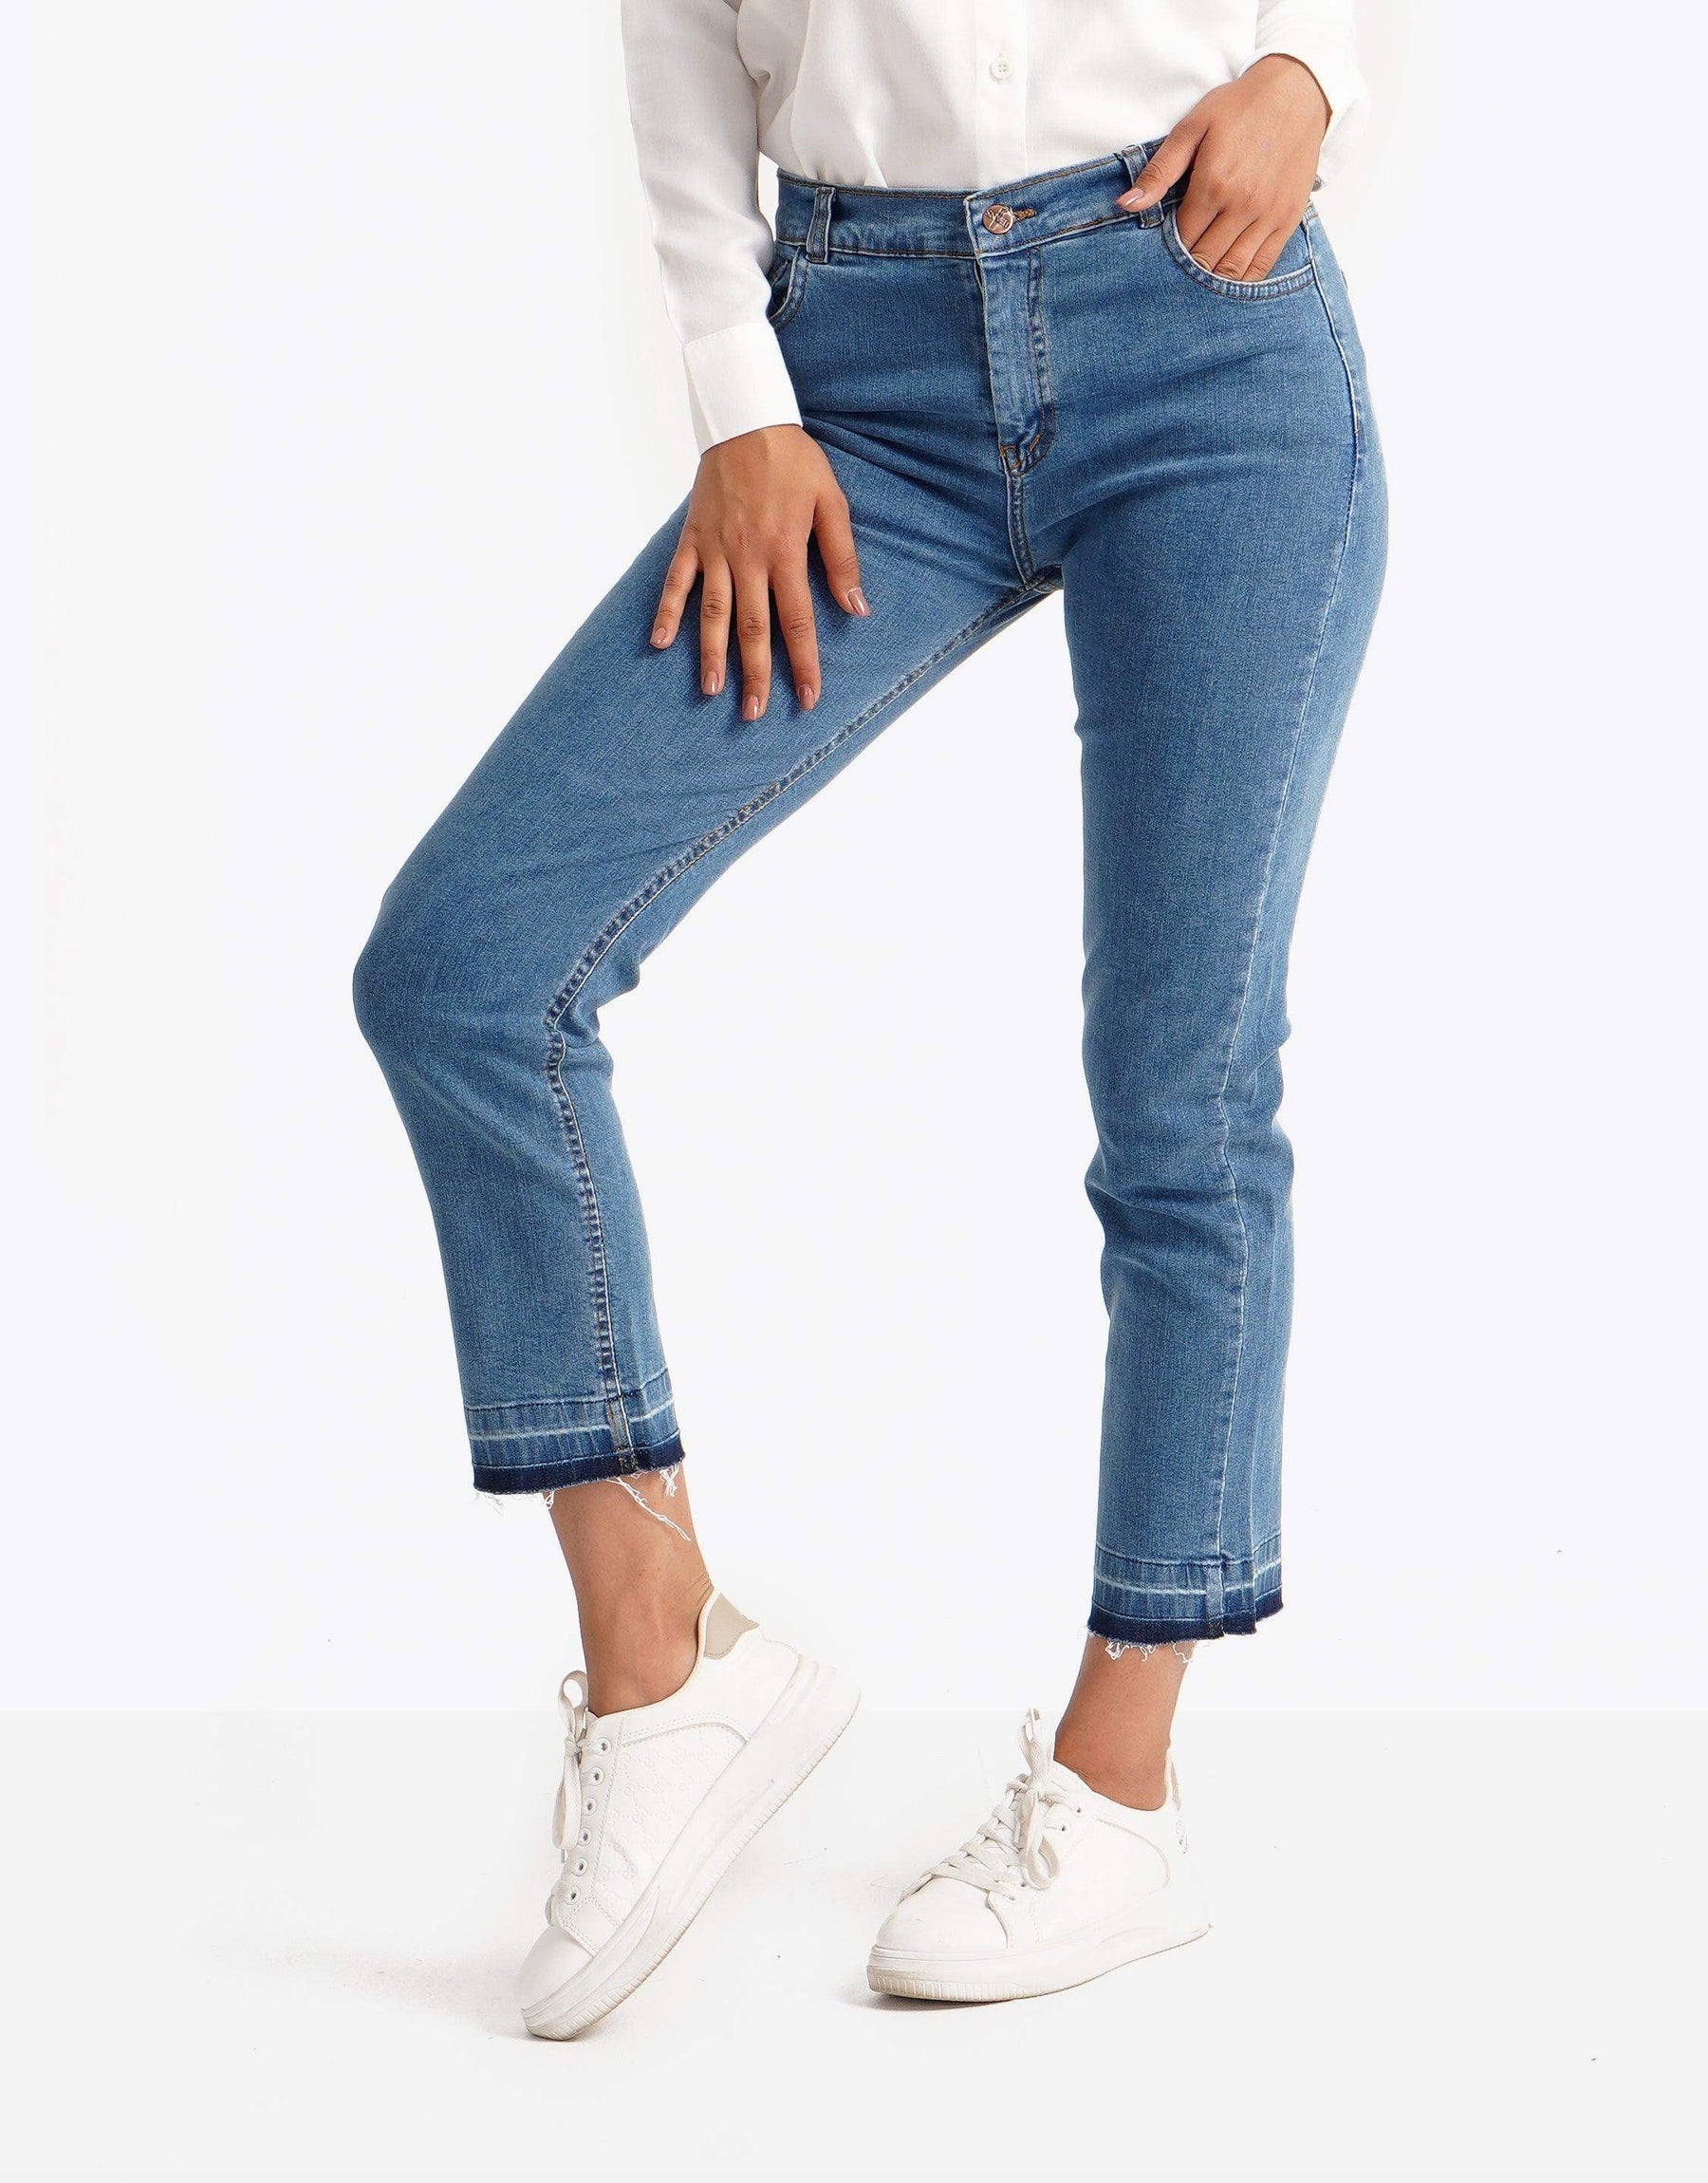 Casual regular waist Jeans pants - Carina - كارينا